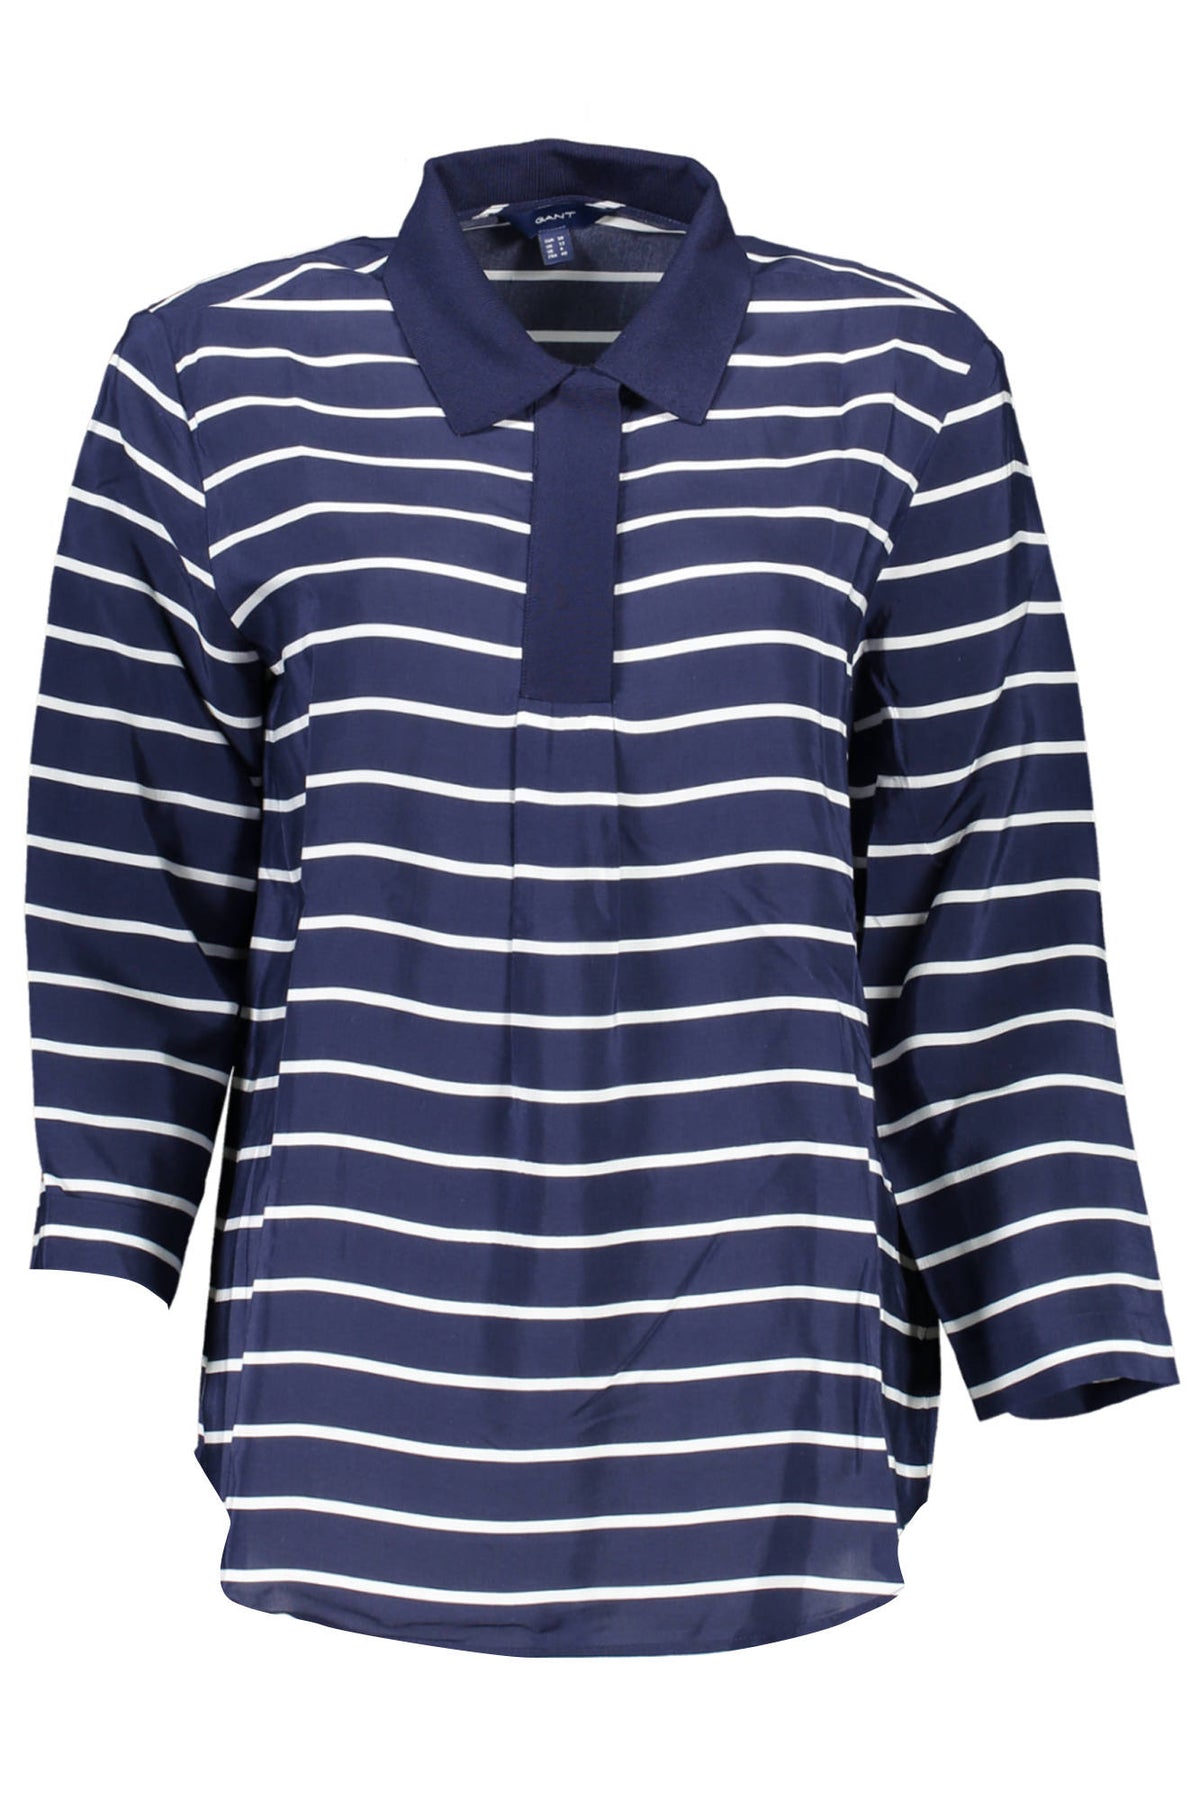 GANT Damen Polohemd Shirt Oberteil mit Kragen und 3/4 Ärmeln